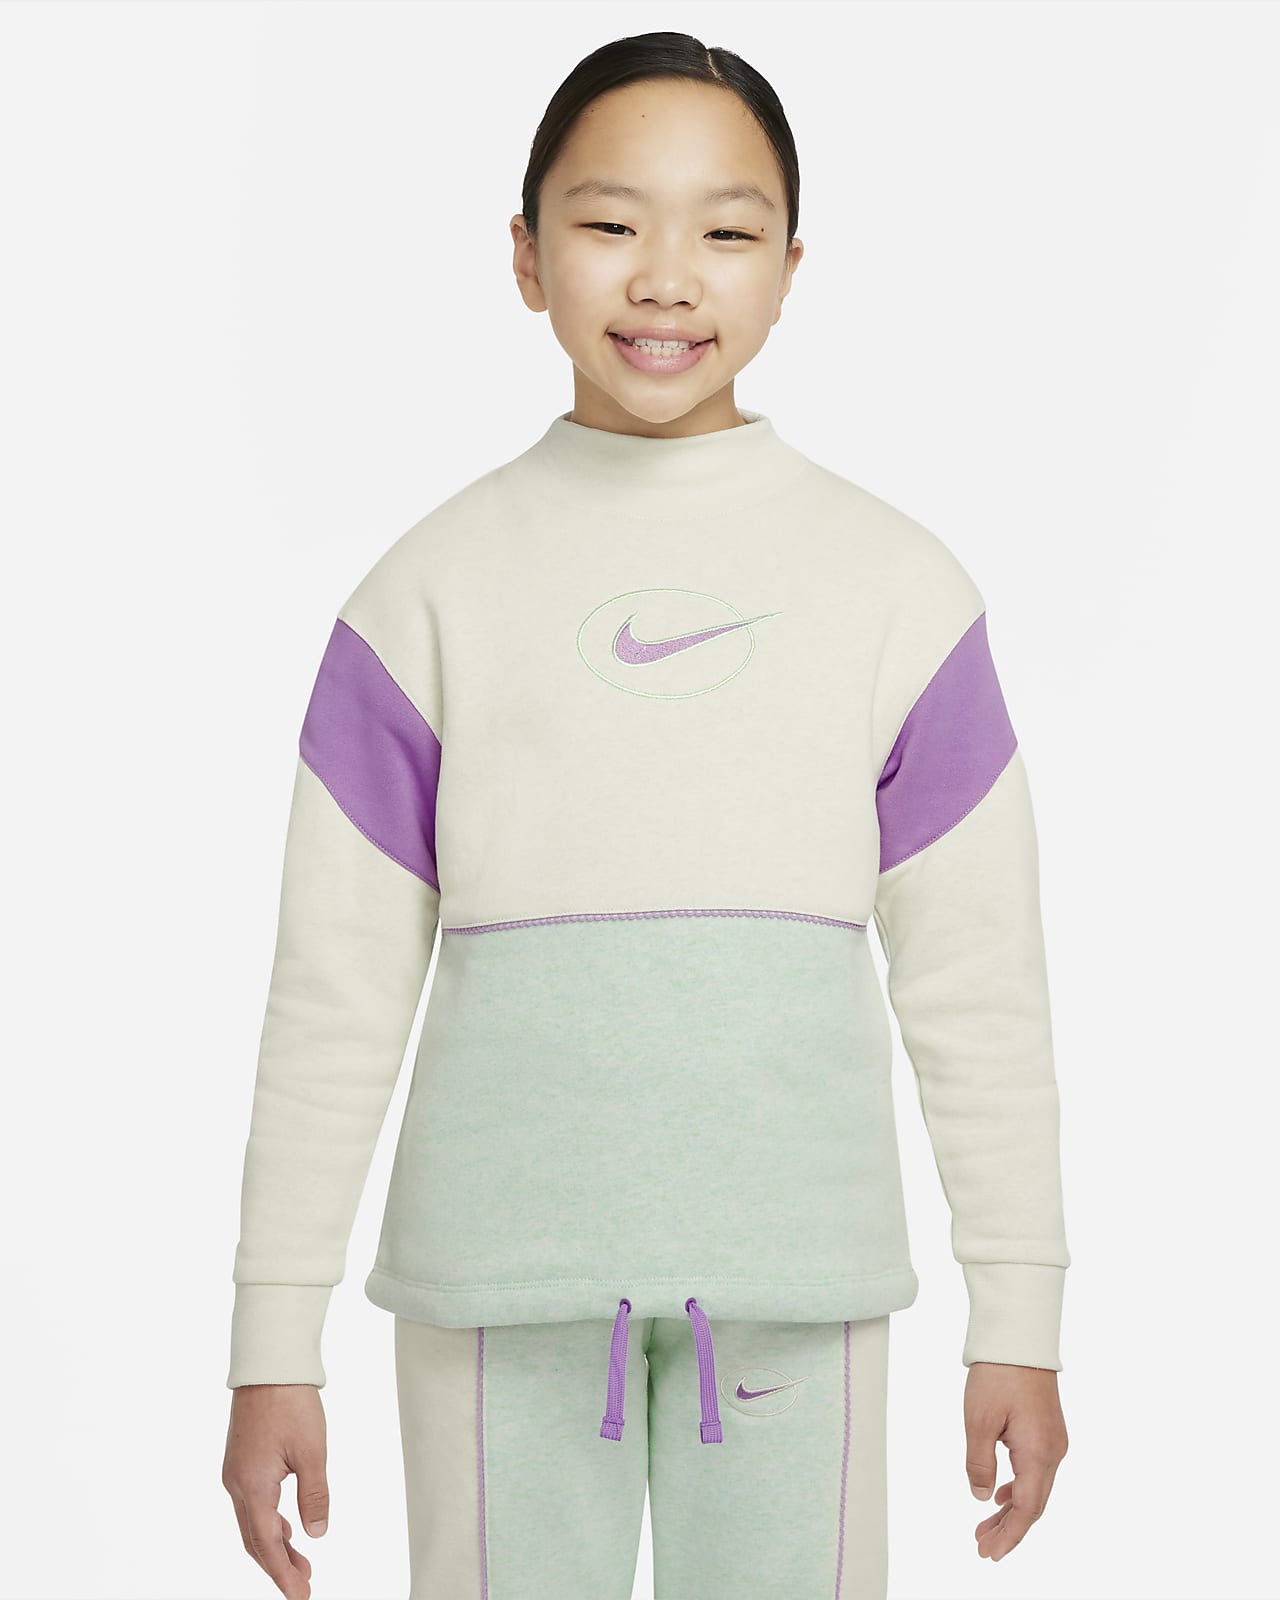 Nike Sportswear Older Kids' (Girls') Fleece Long-Sleeve Mock-Neck Top